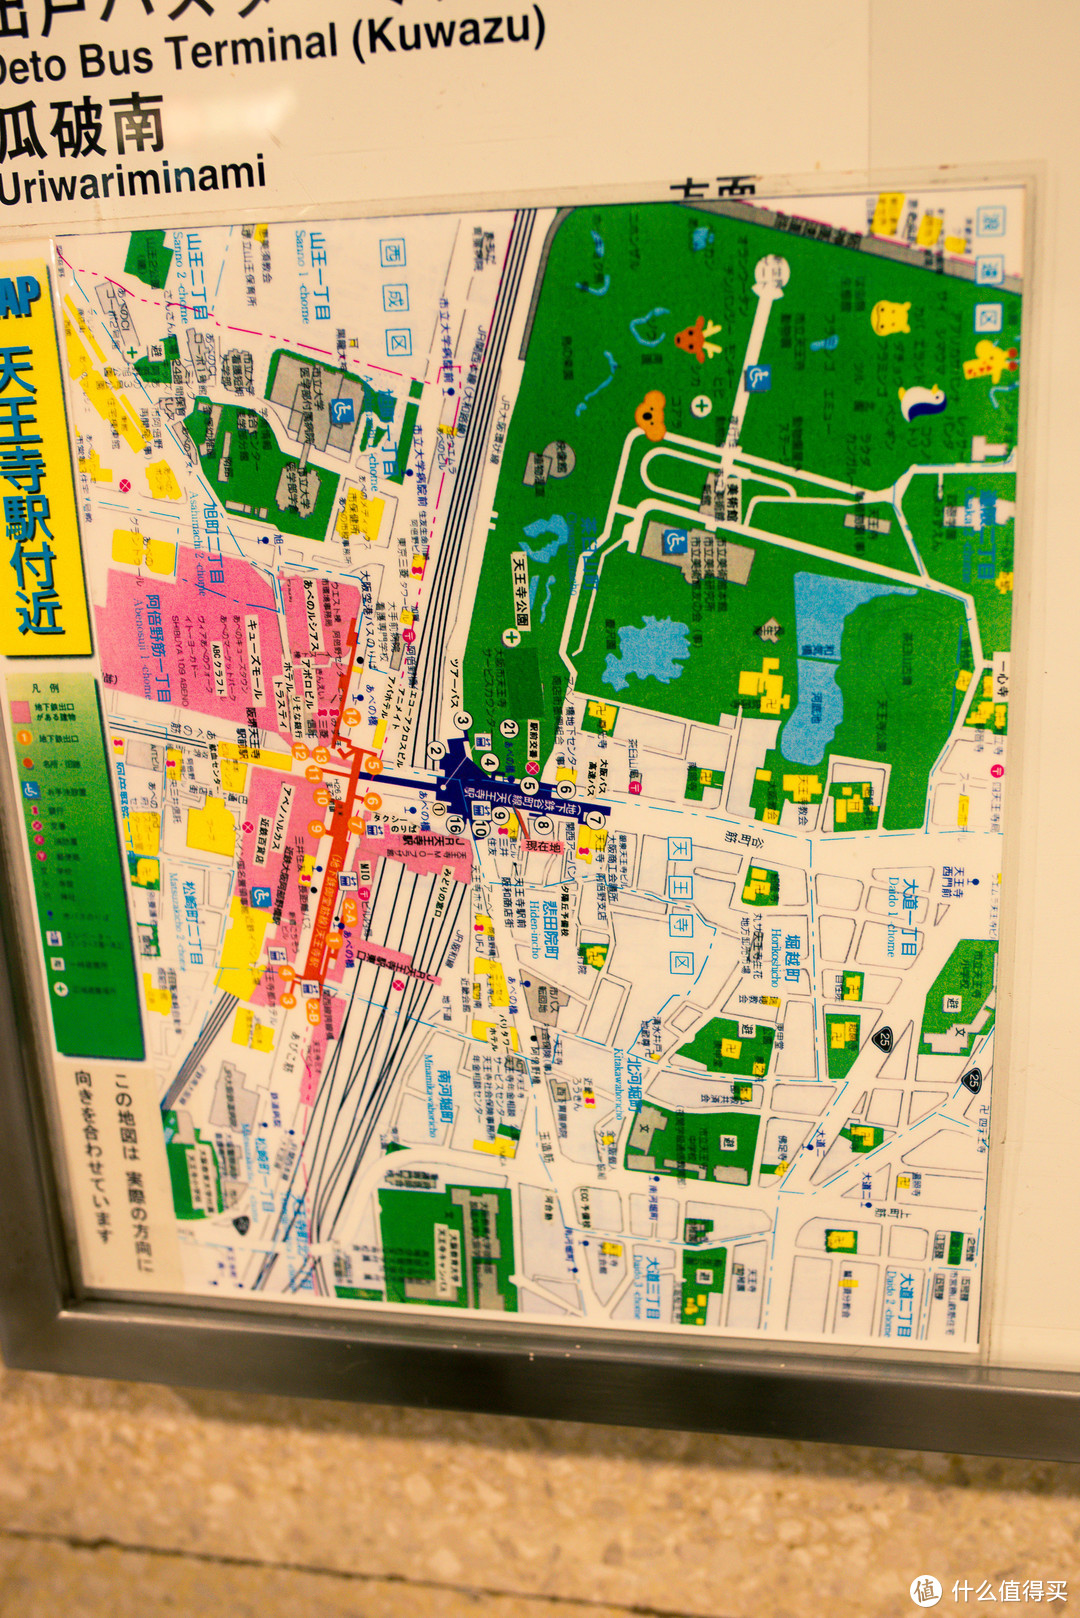 天王寺周边地图，看的不是很清晰。